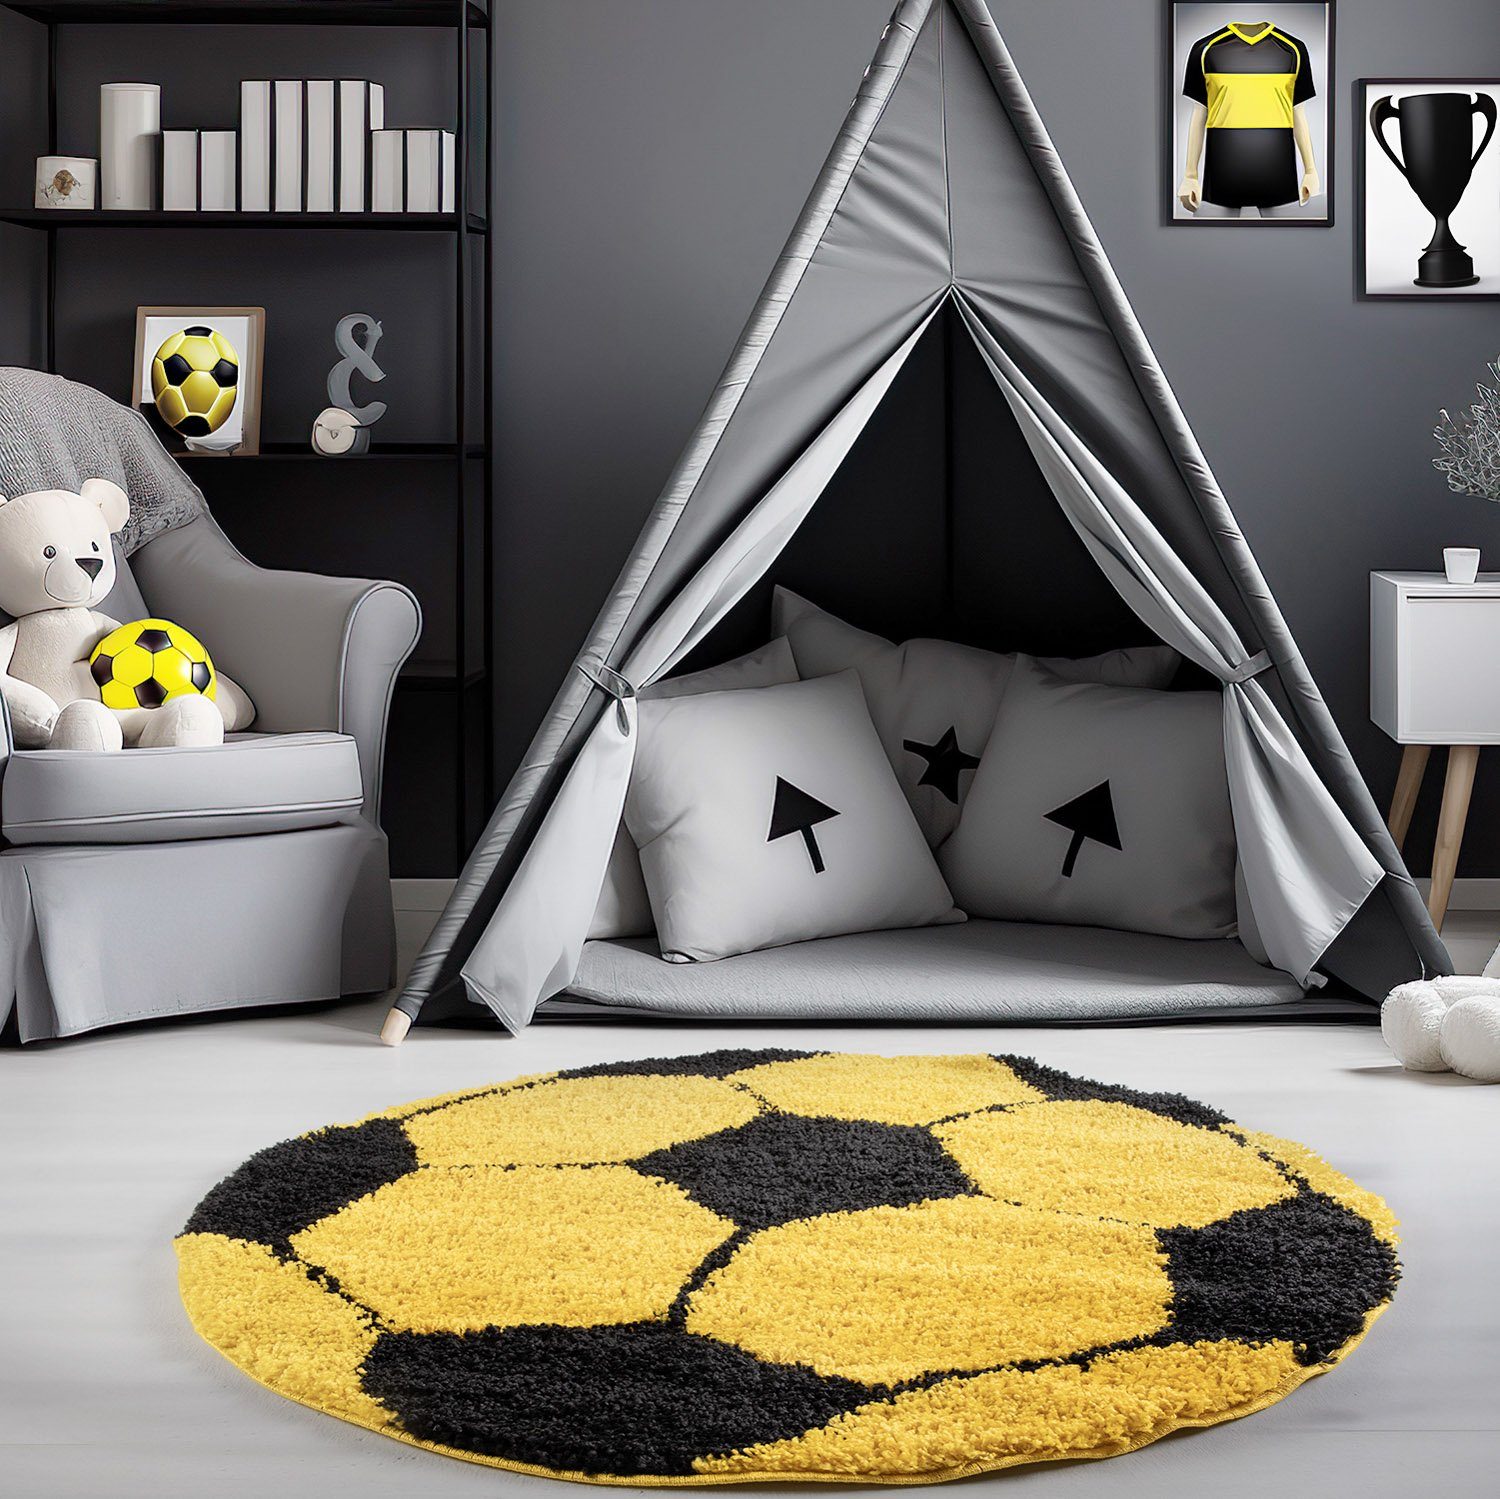 Kinderteppich Fußball-Design, Carpetsale24, Rund, Höhe: 30 mm, Kinder Teppich Fußball-Form Kinderzimmer versch.farben und größen Gelb